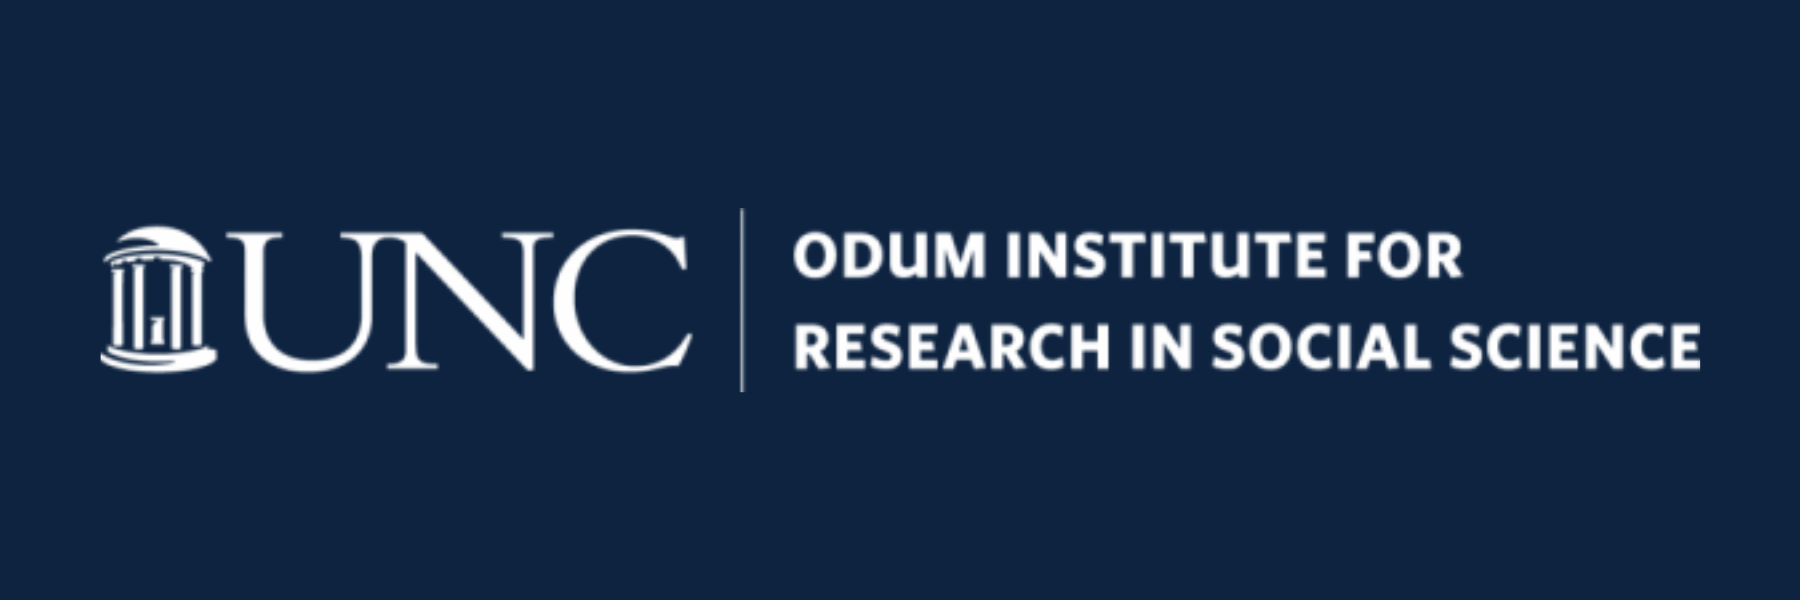 UNC Odem Institute